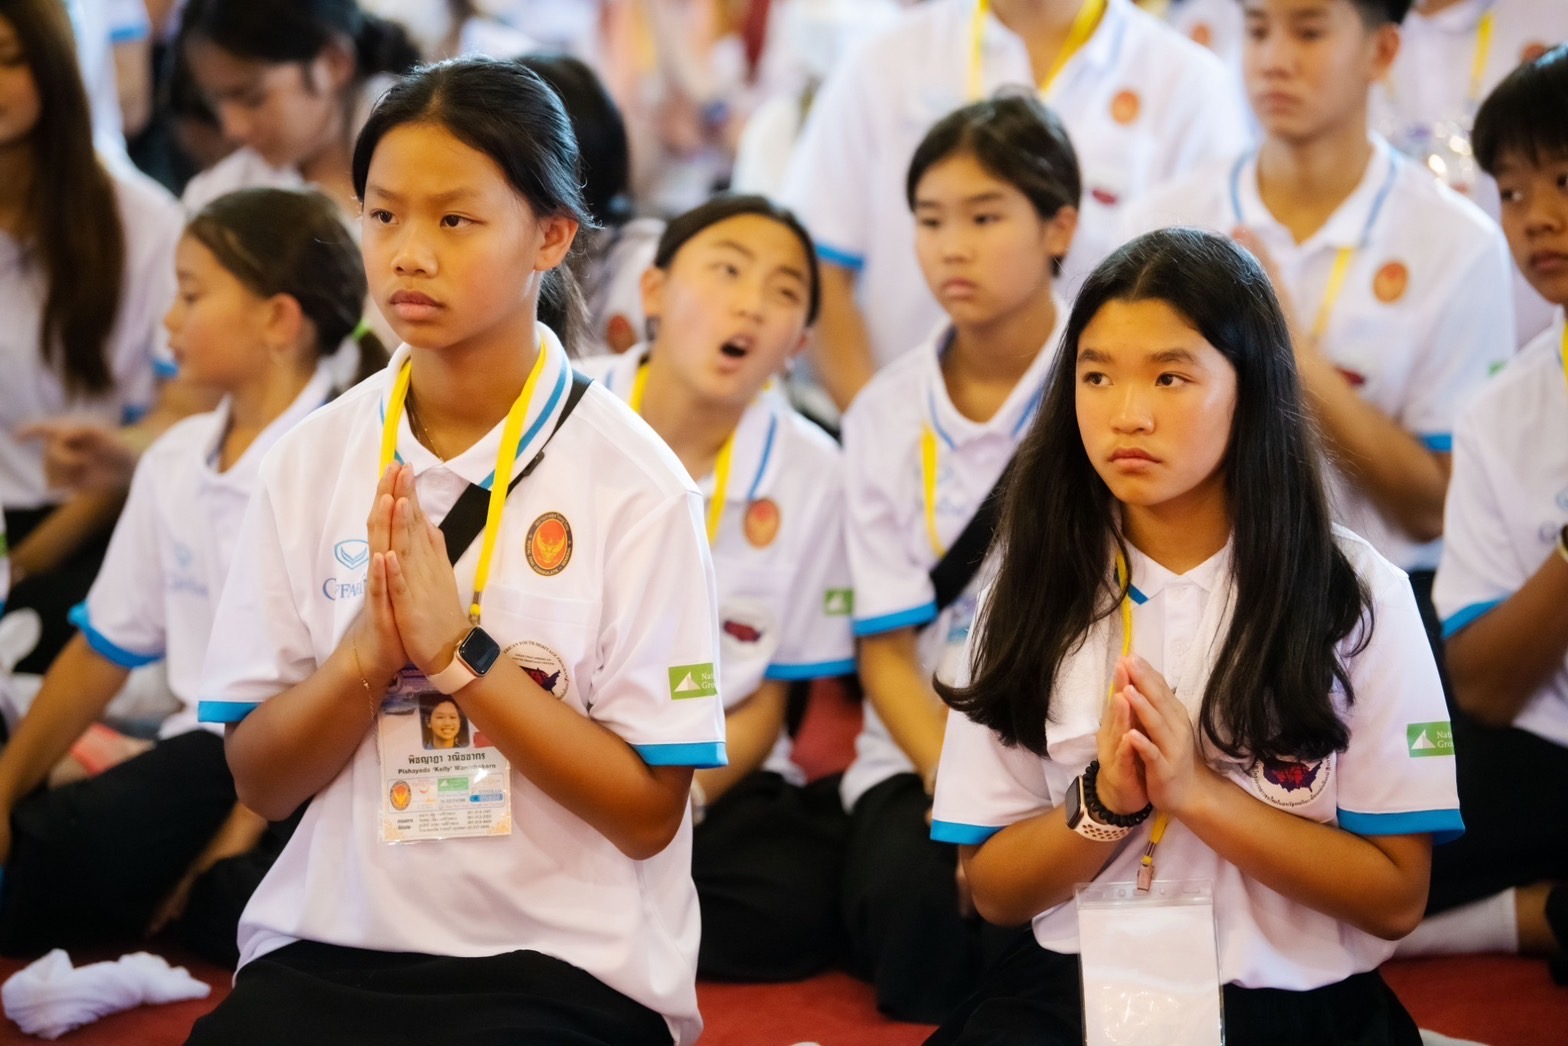 สมเด็จพระมหาธีราจารย์ เมตตาปฏิสันถาร โครงการเยาวชนไทยในสหรัฐอเมริกา เยือนแผ่นดินแม่ ณ วัดพระเชตุพน